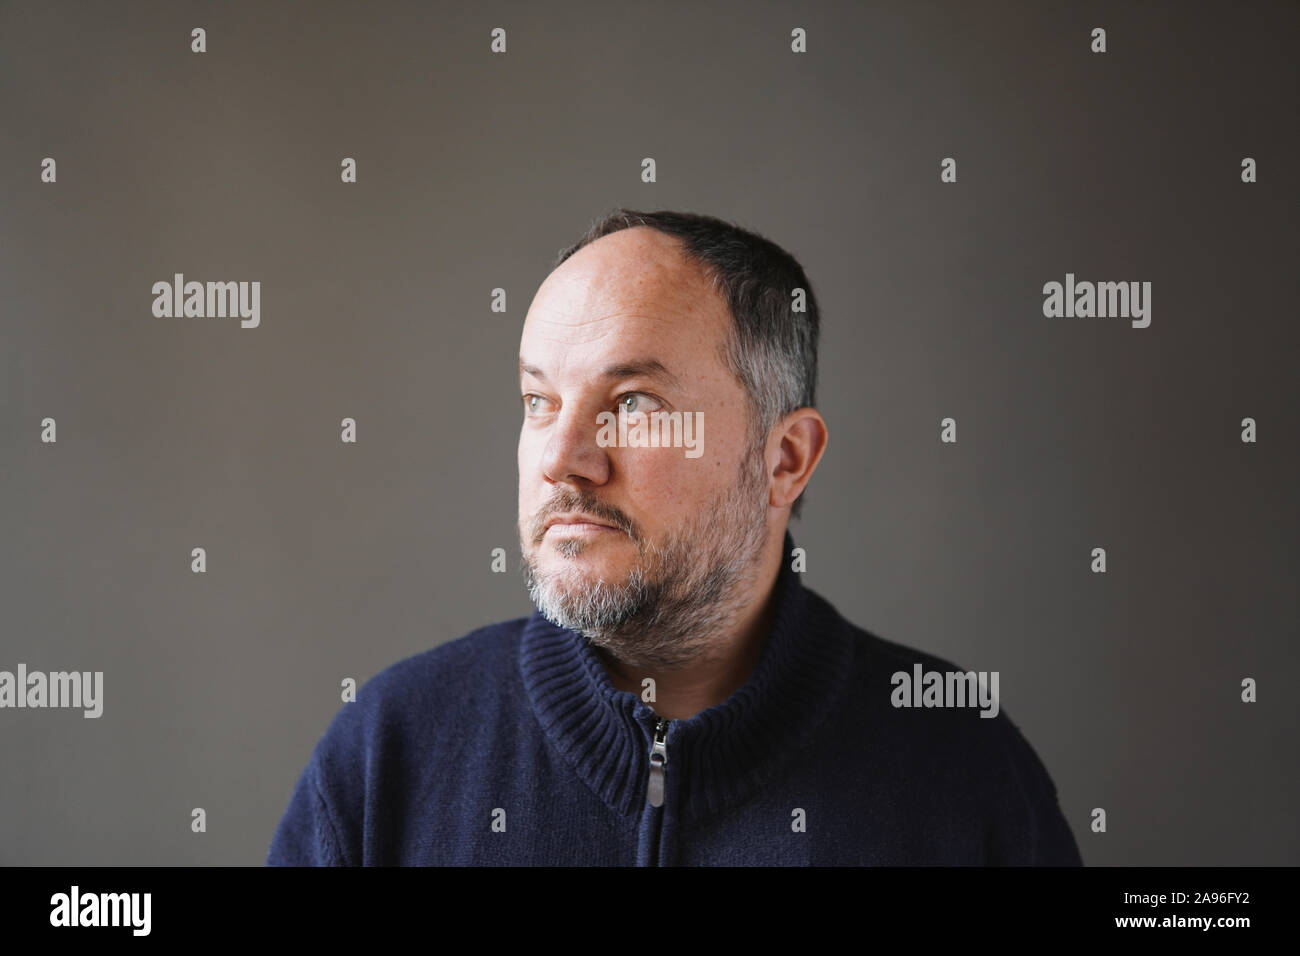 50 Jahre alten Mann mit ergrauten Haare und Bart weg schauen Denken - graue Wand Hintergrund mit Kopie Raum Stockfoto